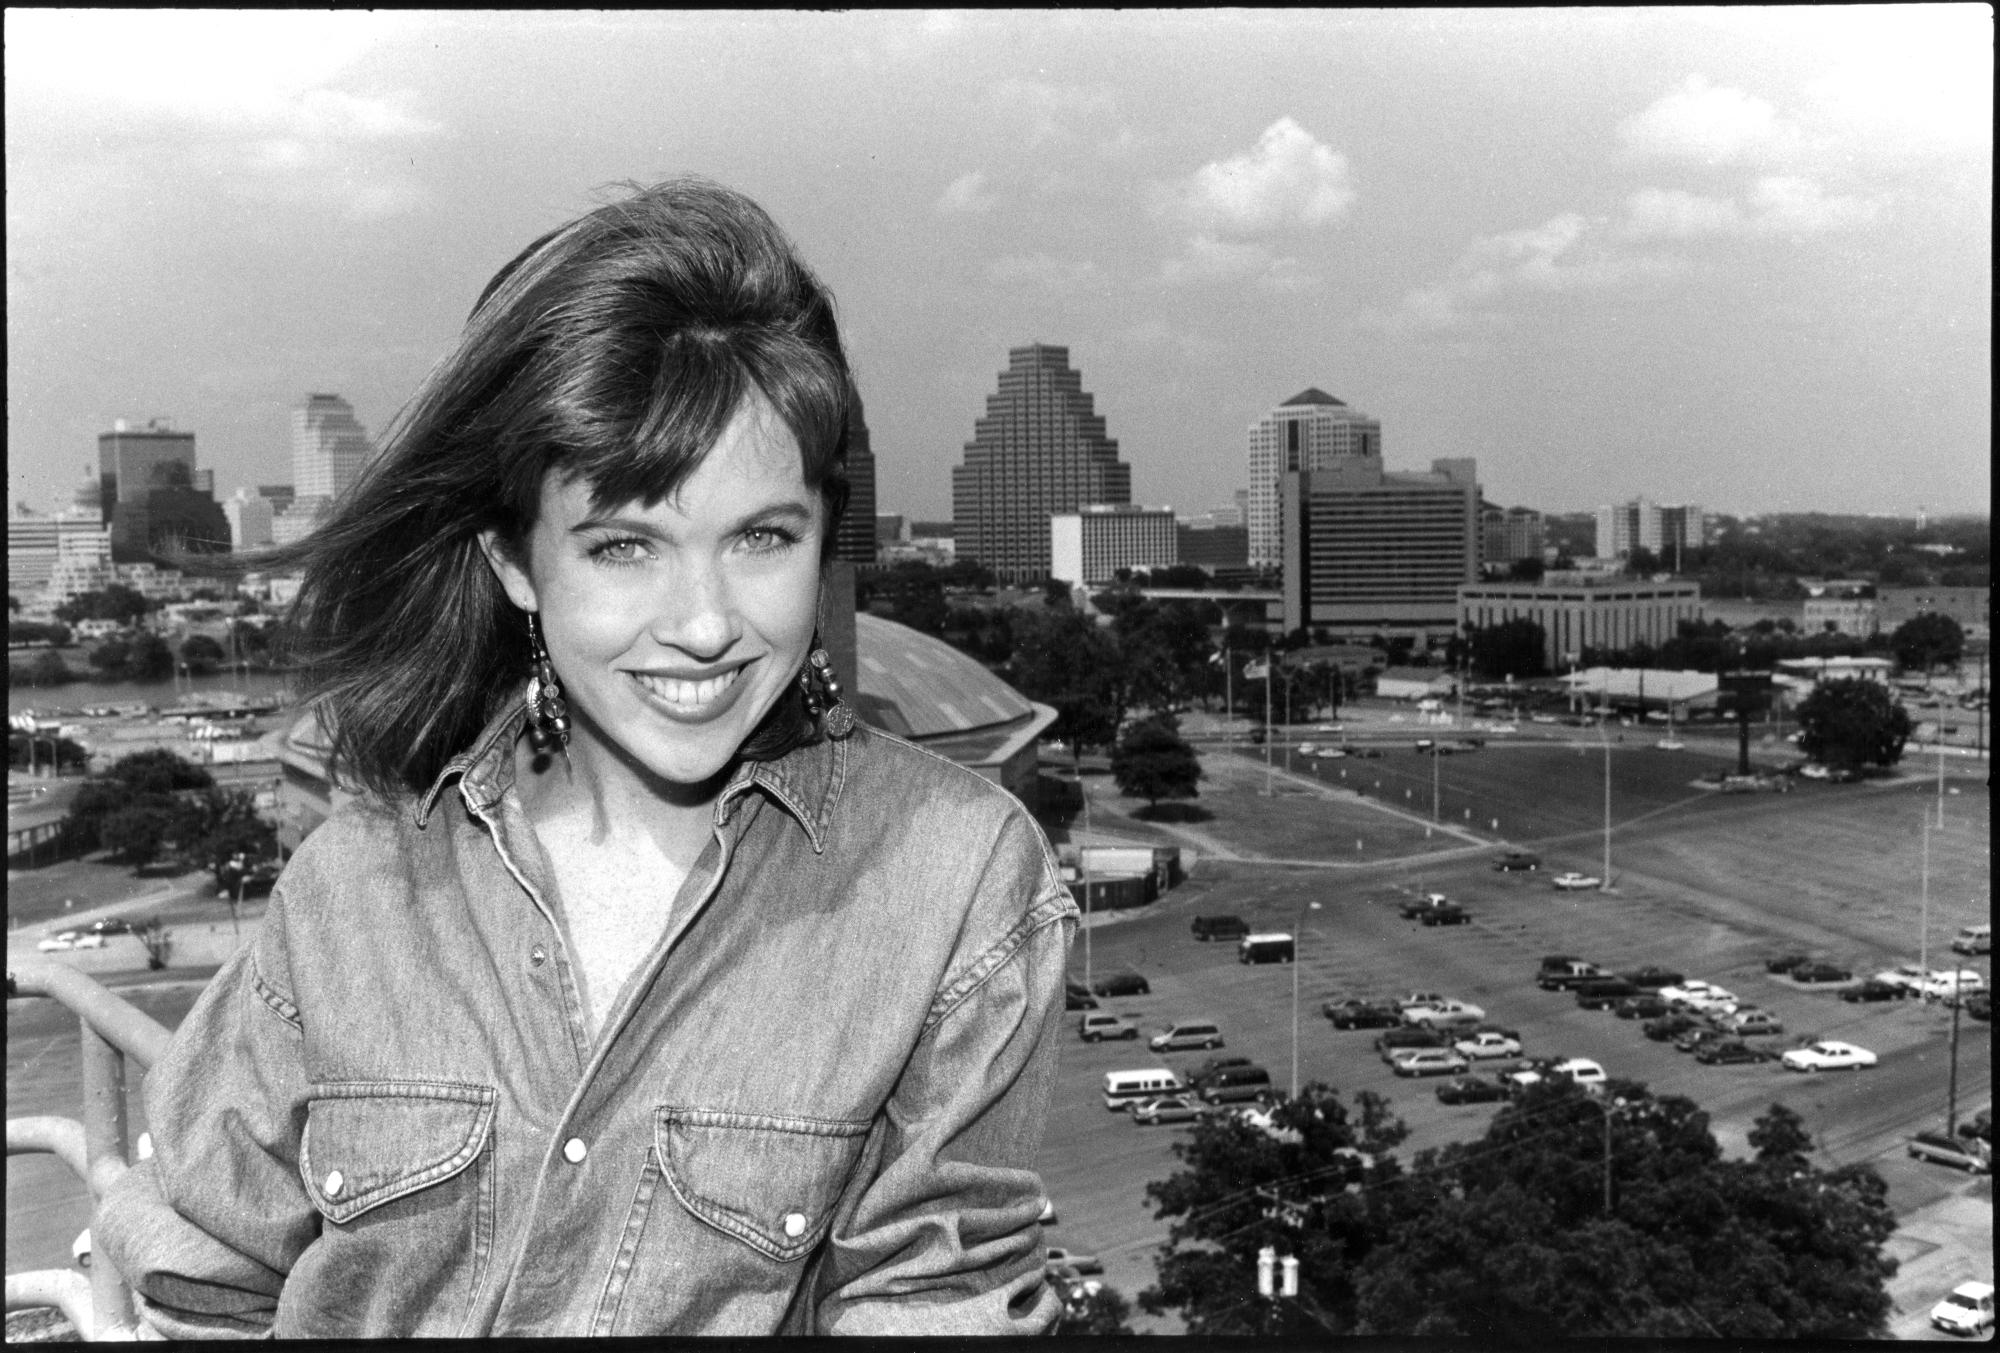 Daily Texan (1991-1992) - Beth Wilson #3